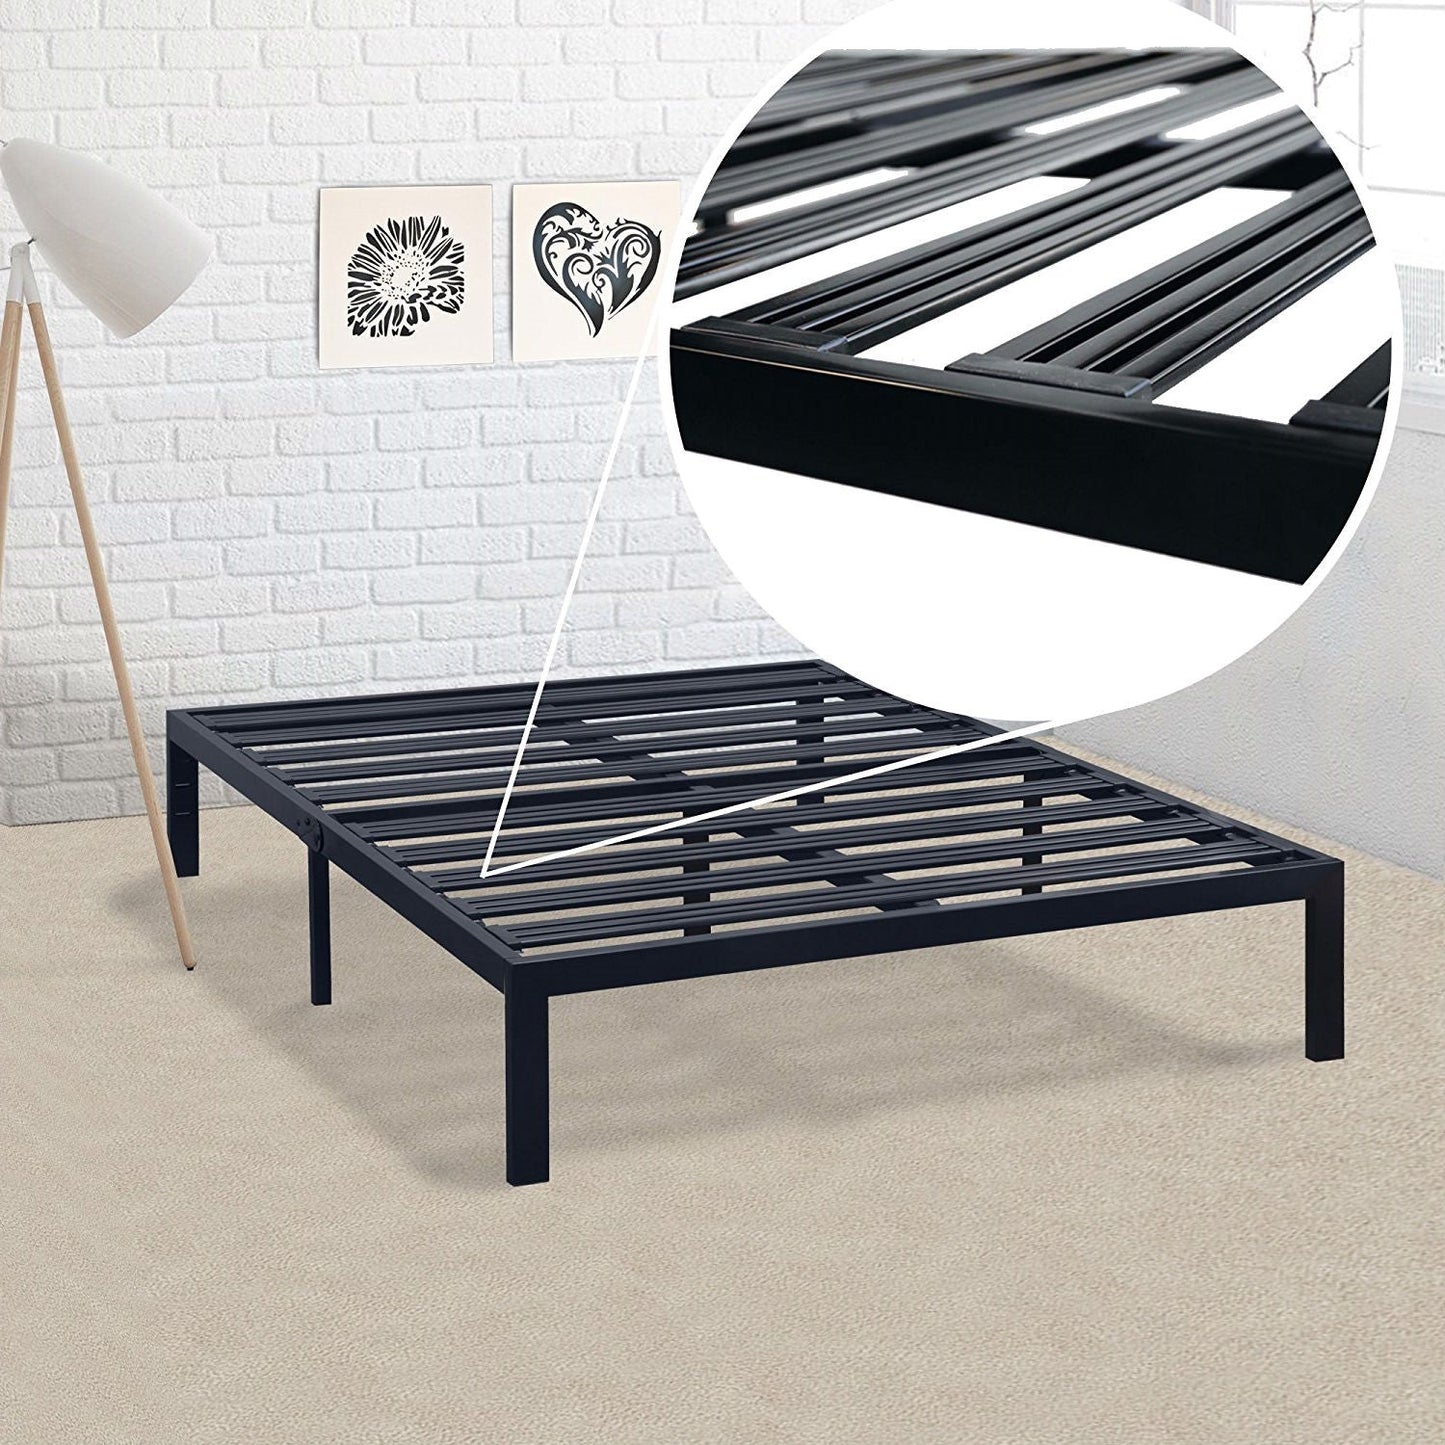 Bedroom > Bed Frames > Platform Beds - Twin XL Metal Platform Bed Frame With Heavy Duty Steel Slats